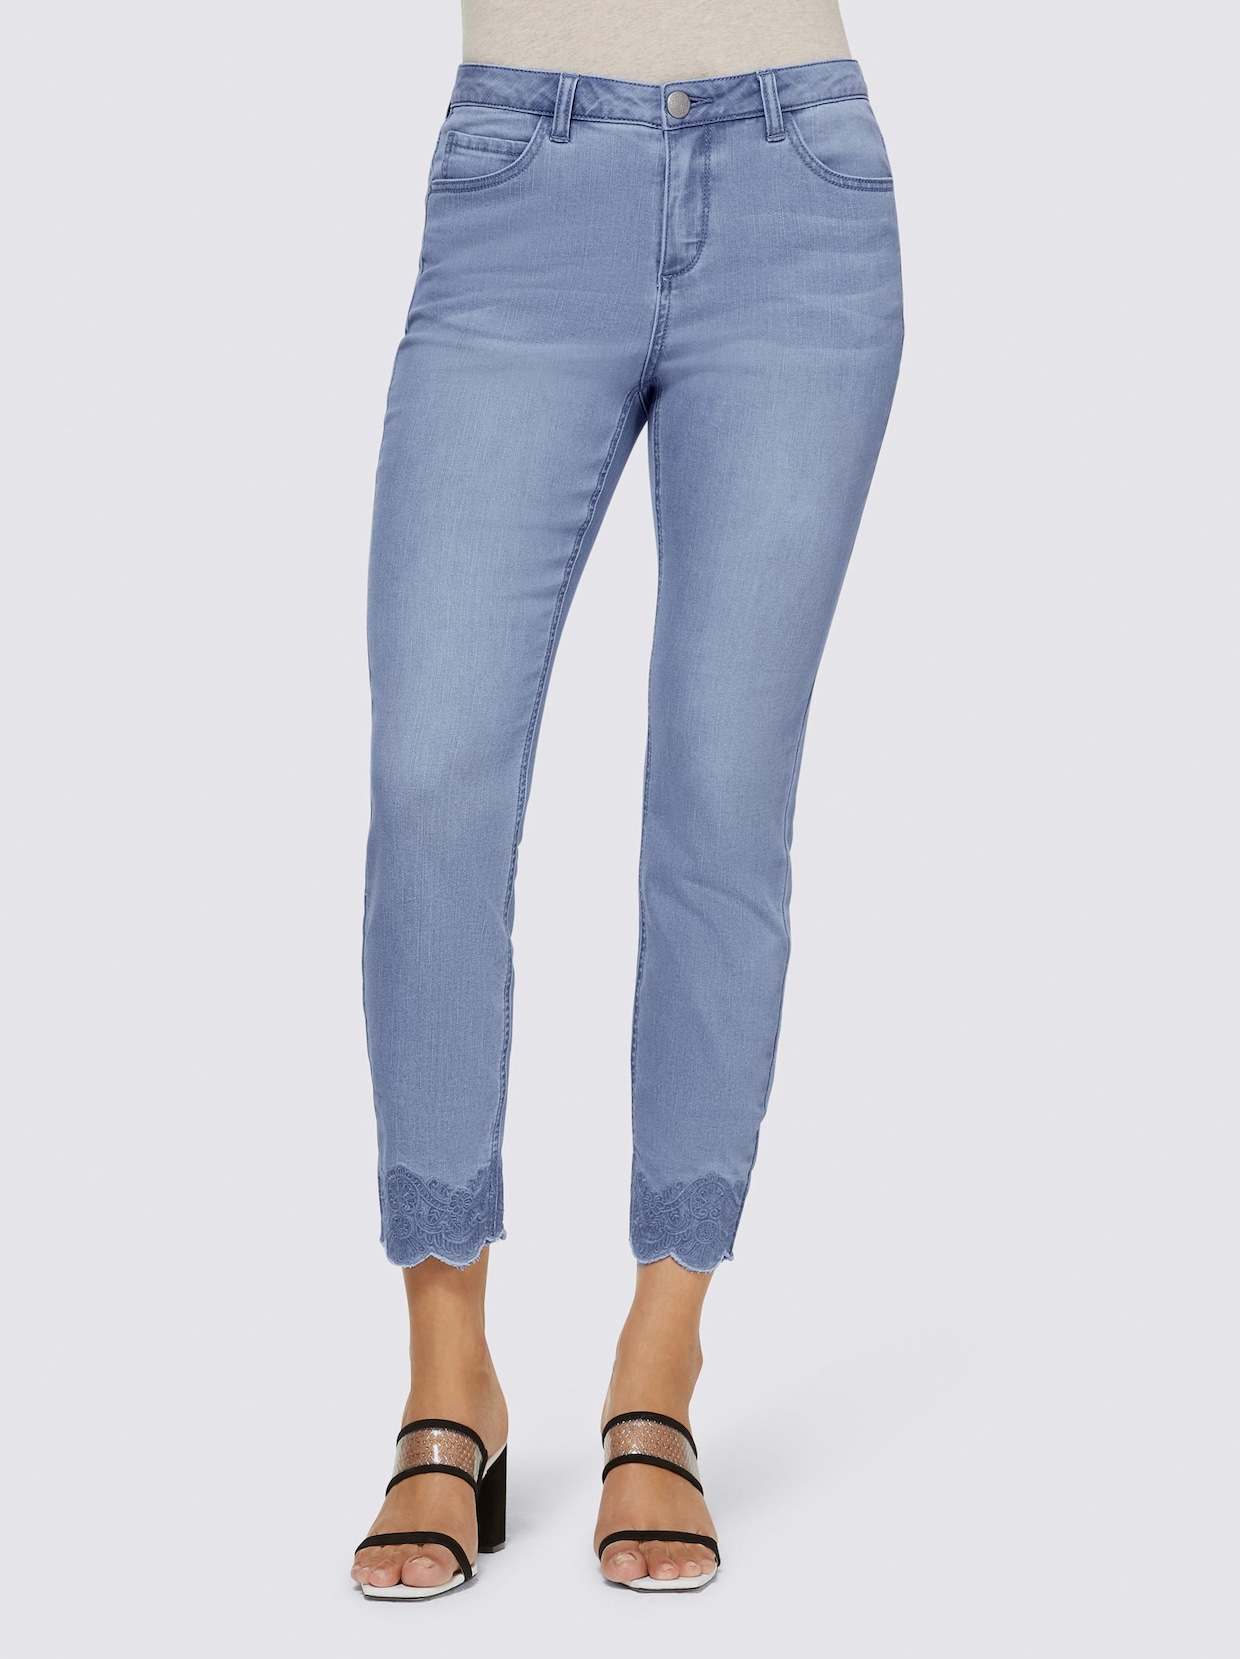 Lässige jeans damen - Die qualitativsten Lässige jeans damen analysiert!